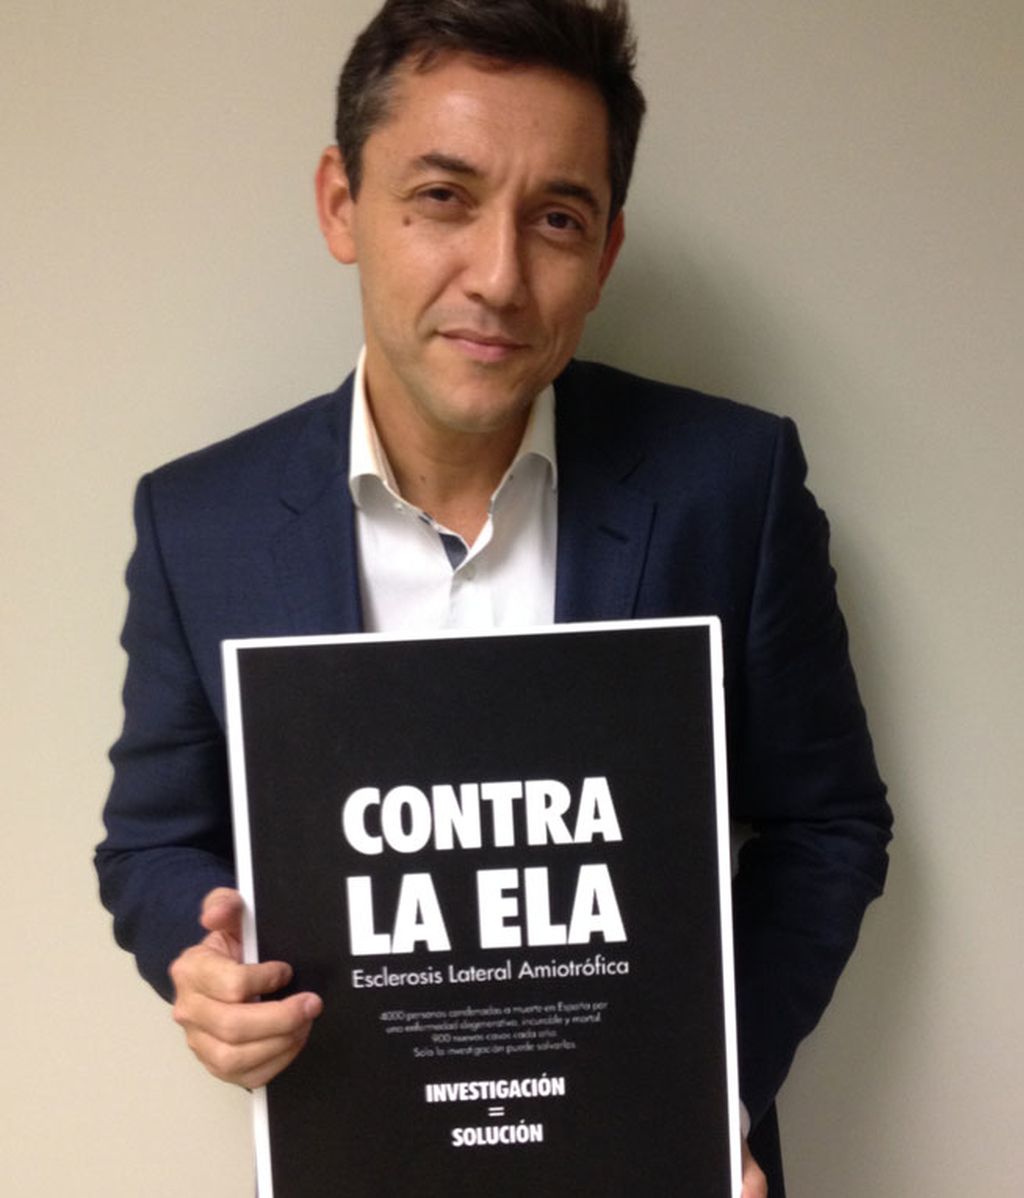 Las caras de los Informativos de Mediaset muestran su apoyo a los enfermos de ELA